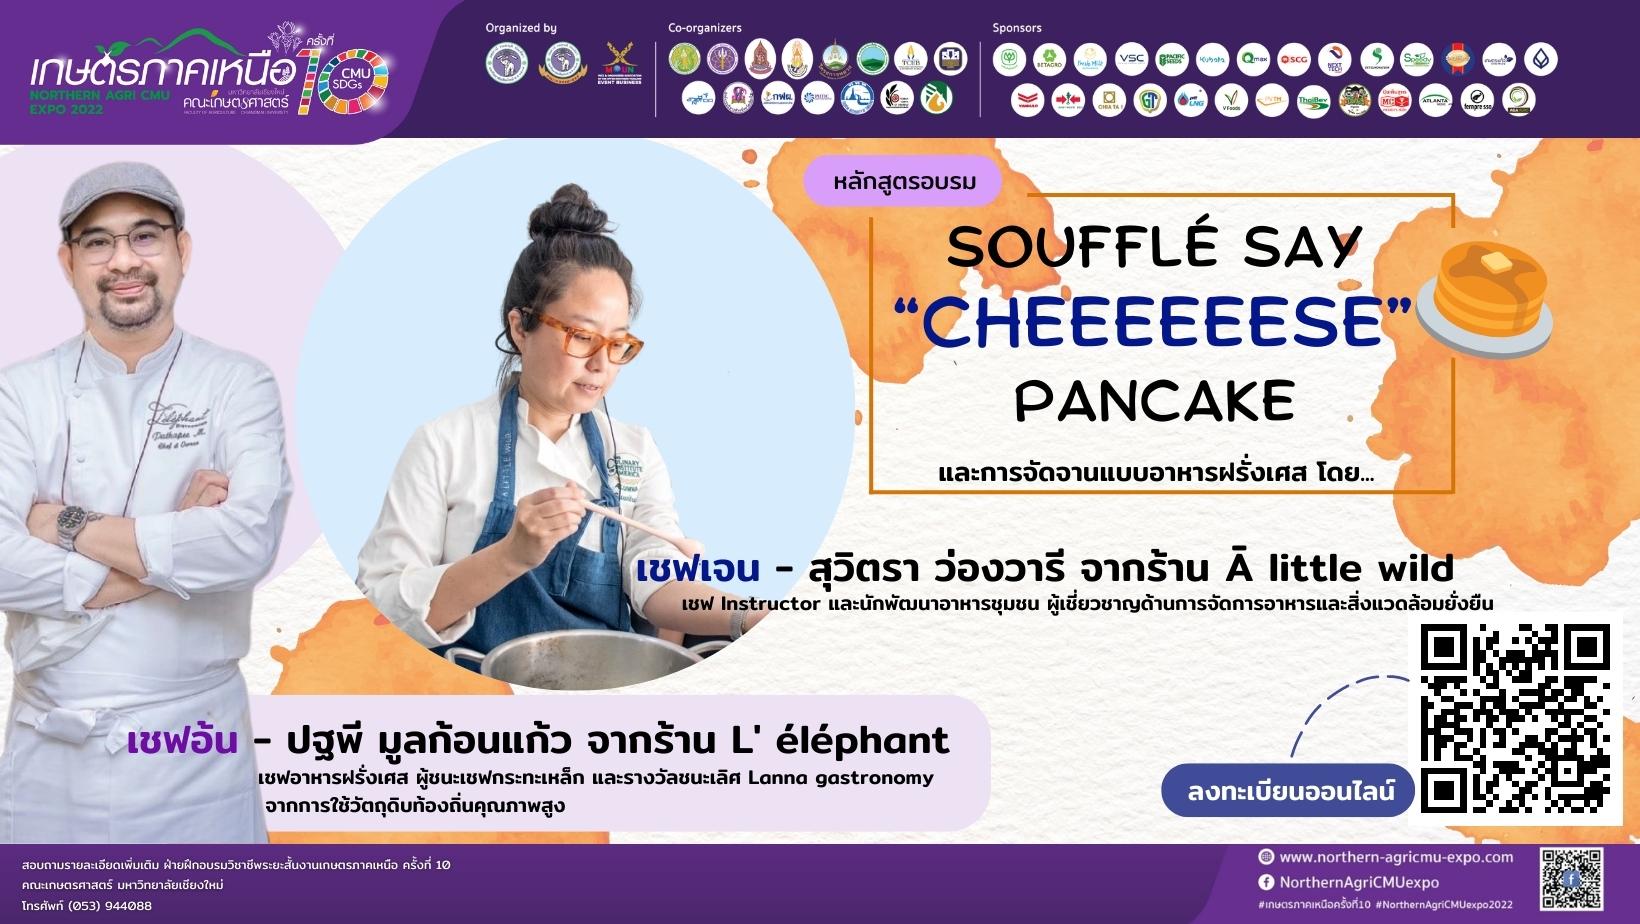 Souffle pancake